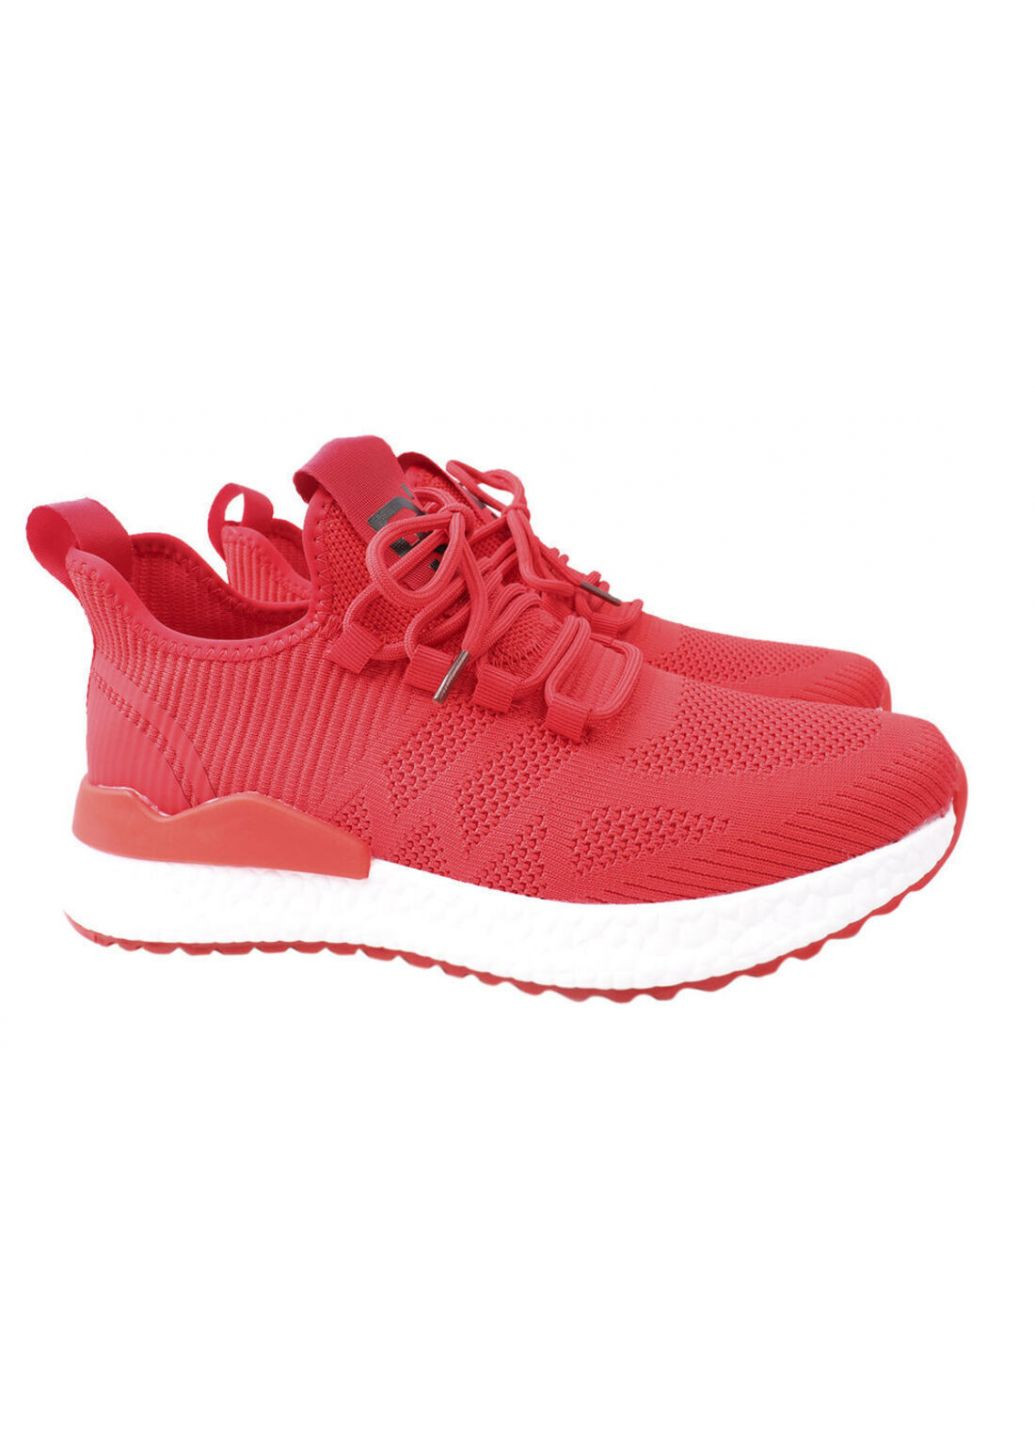 Червоні кросівки чоловічі з текстилю, на низькому ходу, на шнурівці, червоні, Lifexpert 600-21DK